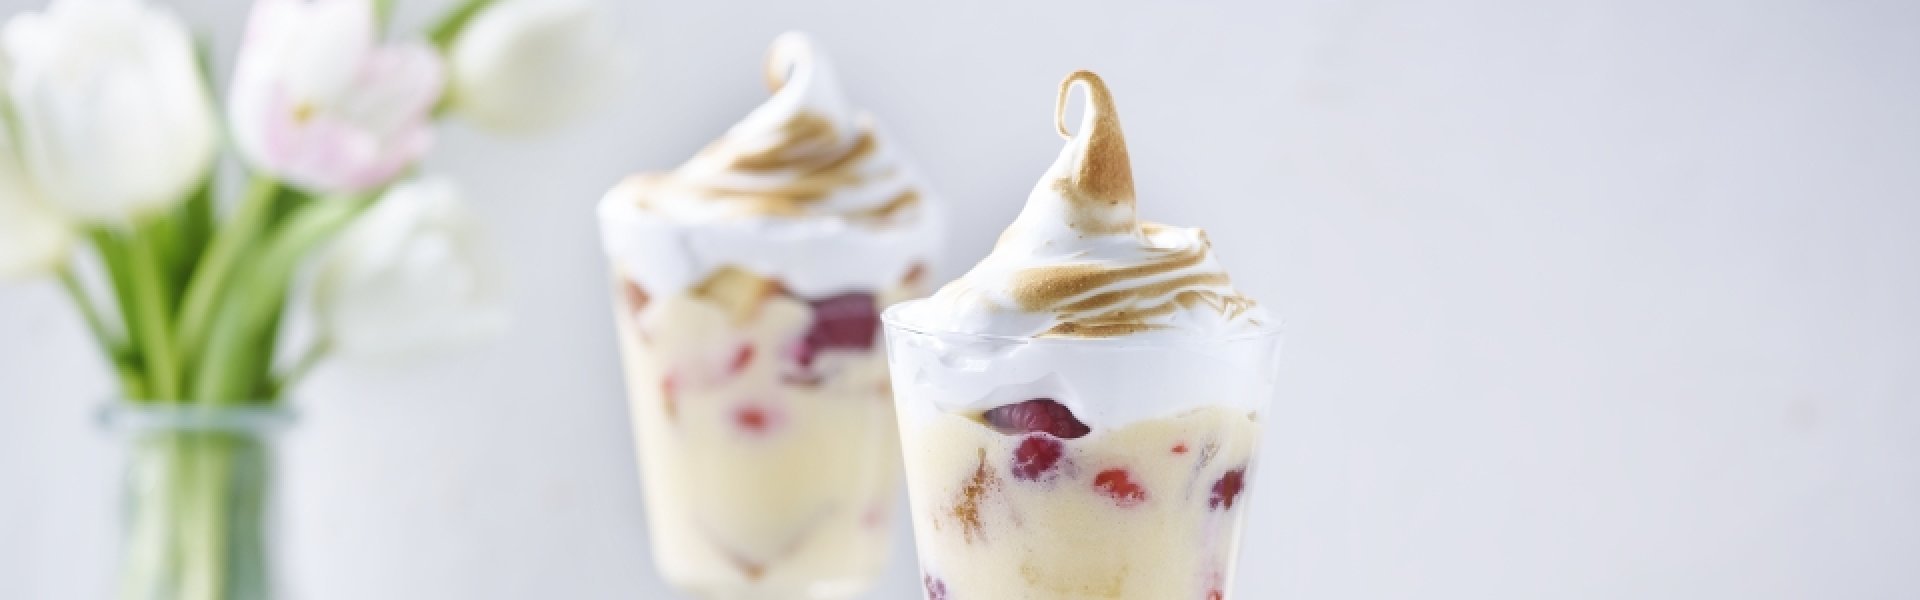 Trifle avec crème anglaise et meringue